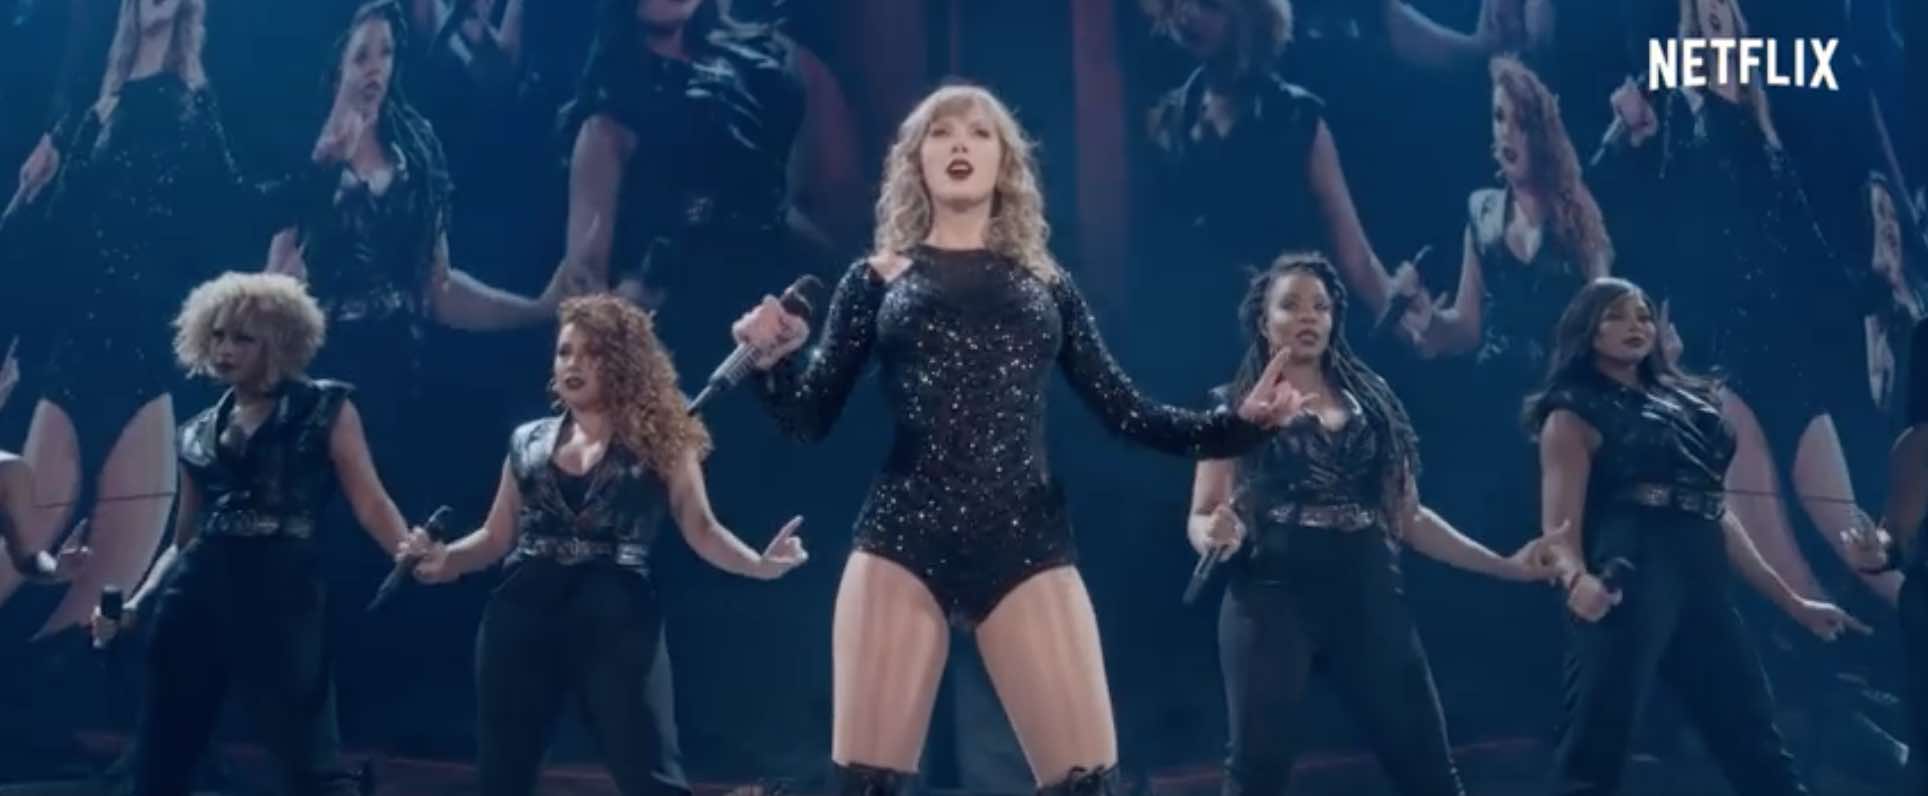 Le concert « Reputation Stadium Tour » de Taylor Swift sort le 31 décembre sur Netflix